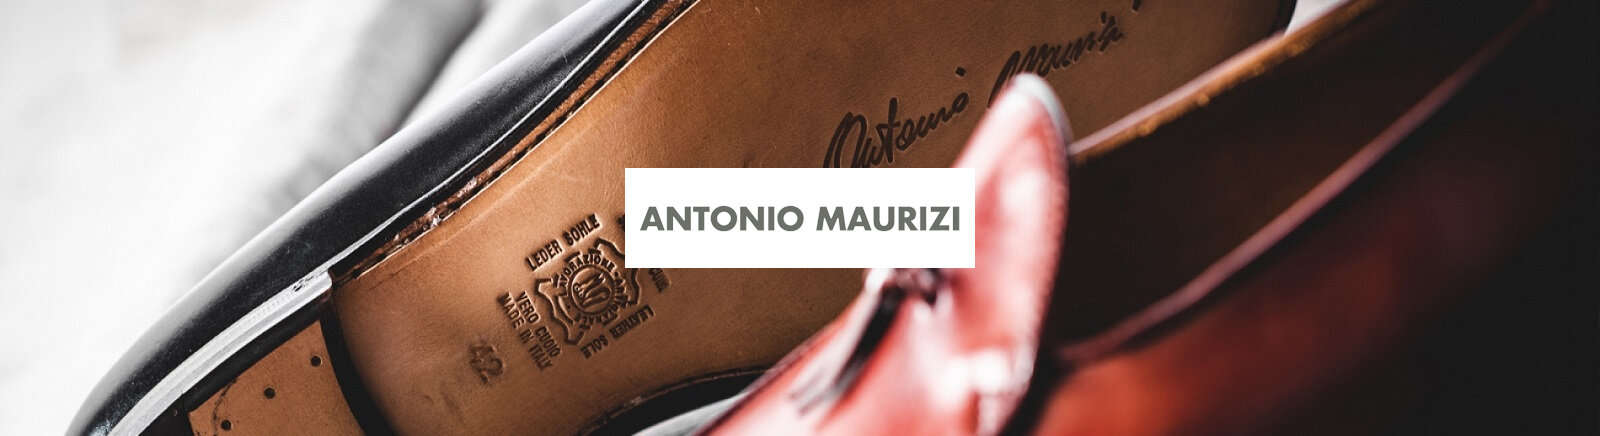 Antonio Maurizi Markenschuhe online kaufen im Shop von Prange